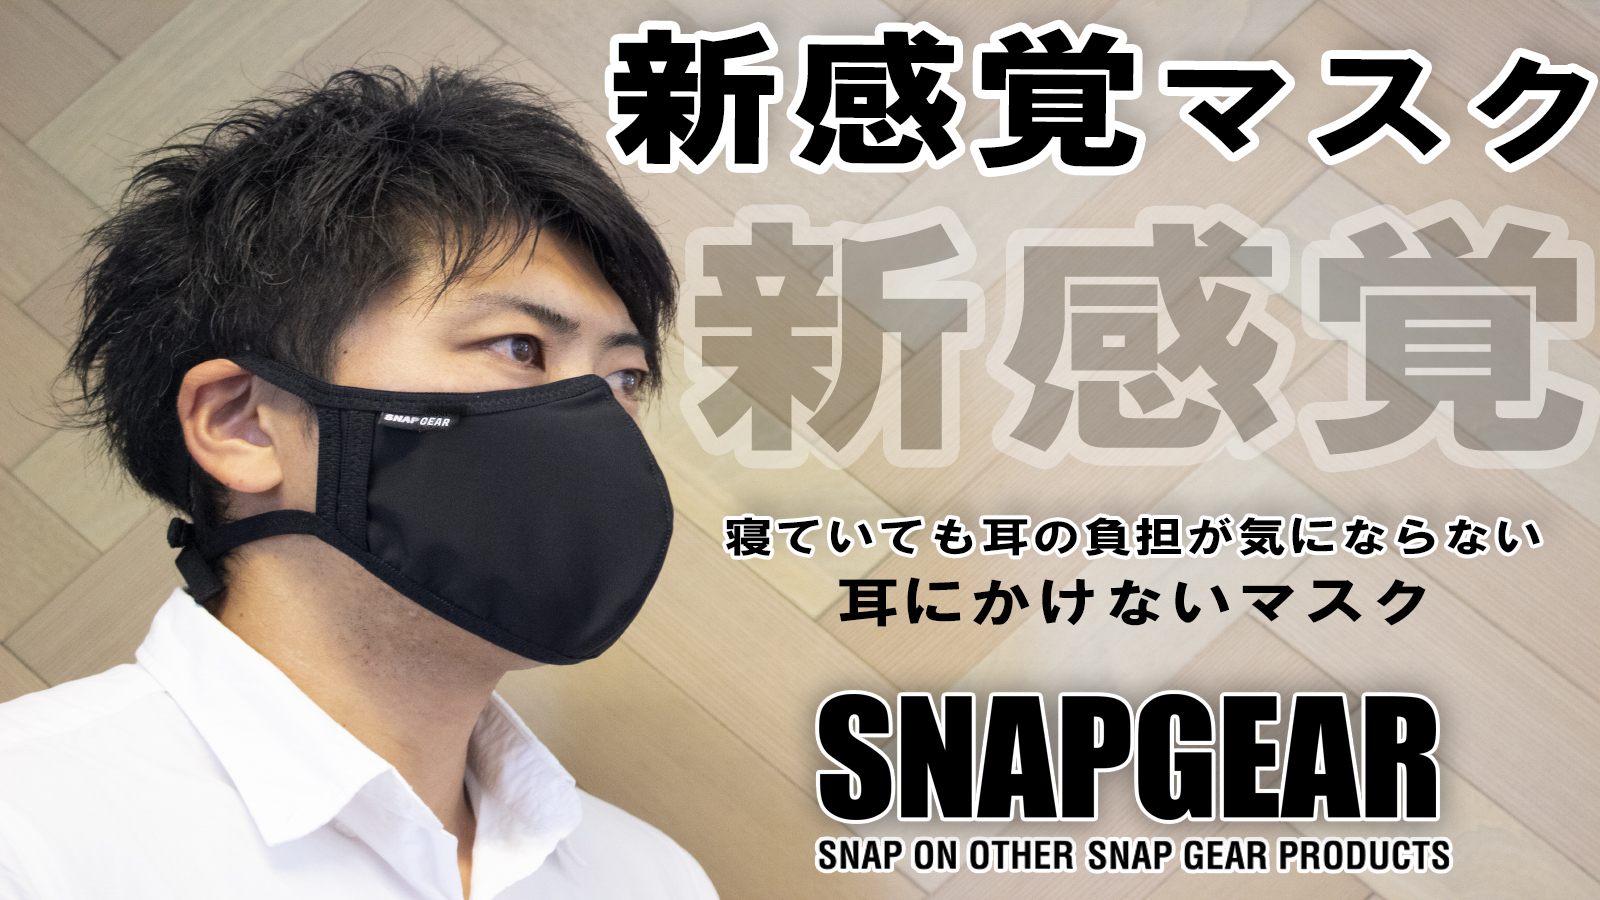 新感覚マスク 耳にかけない 21年2月 Snapgearマスク全国発売決定 株式会社アルファネットのプレスリリース